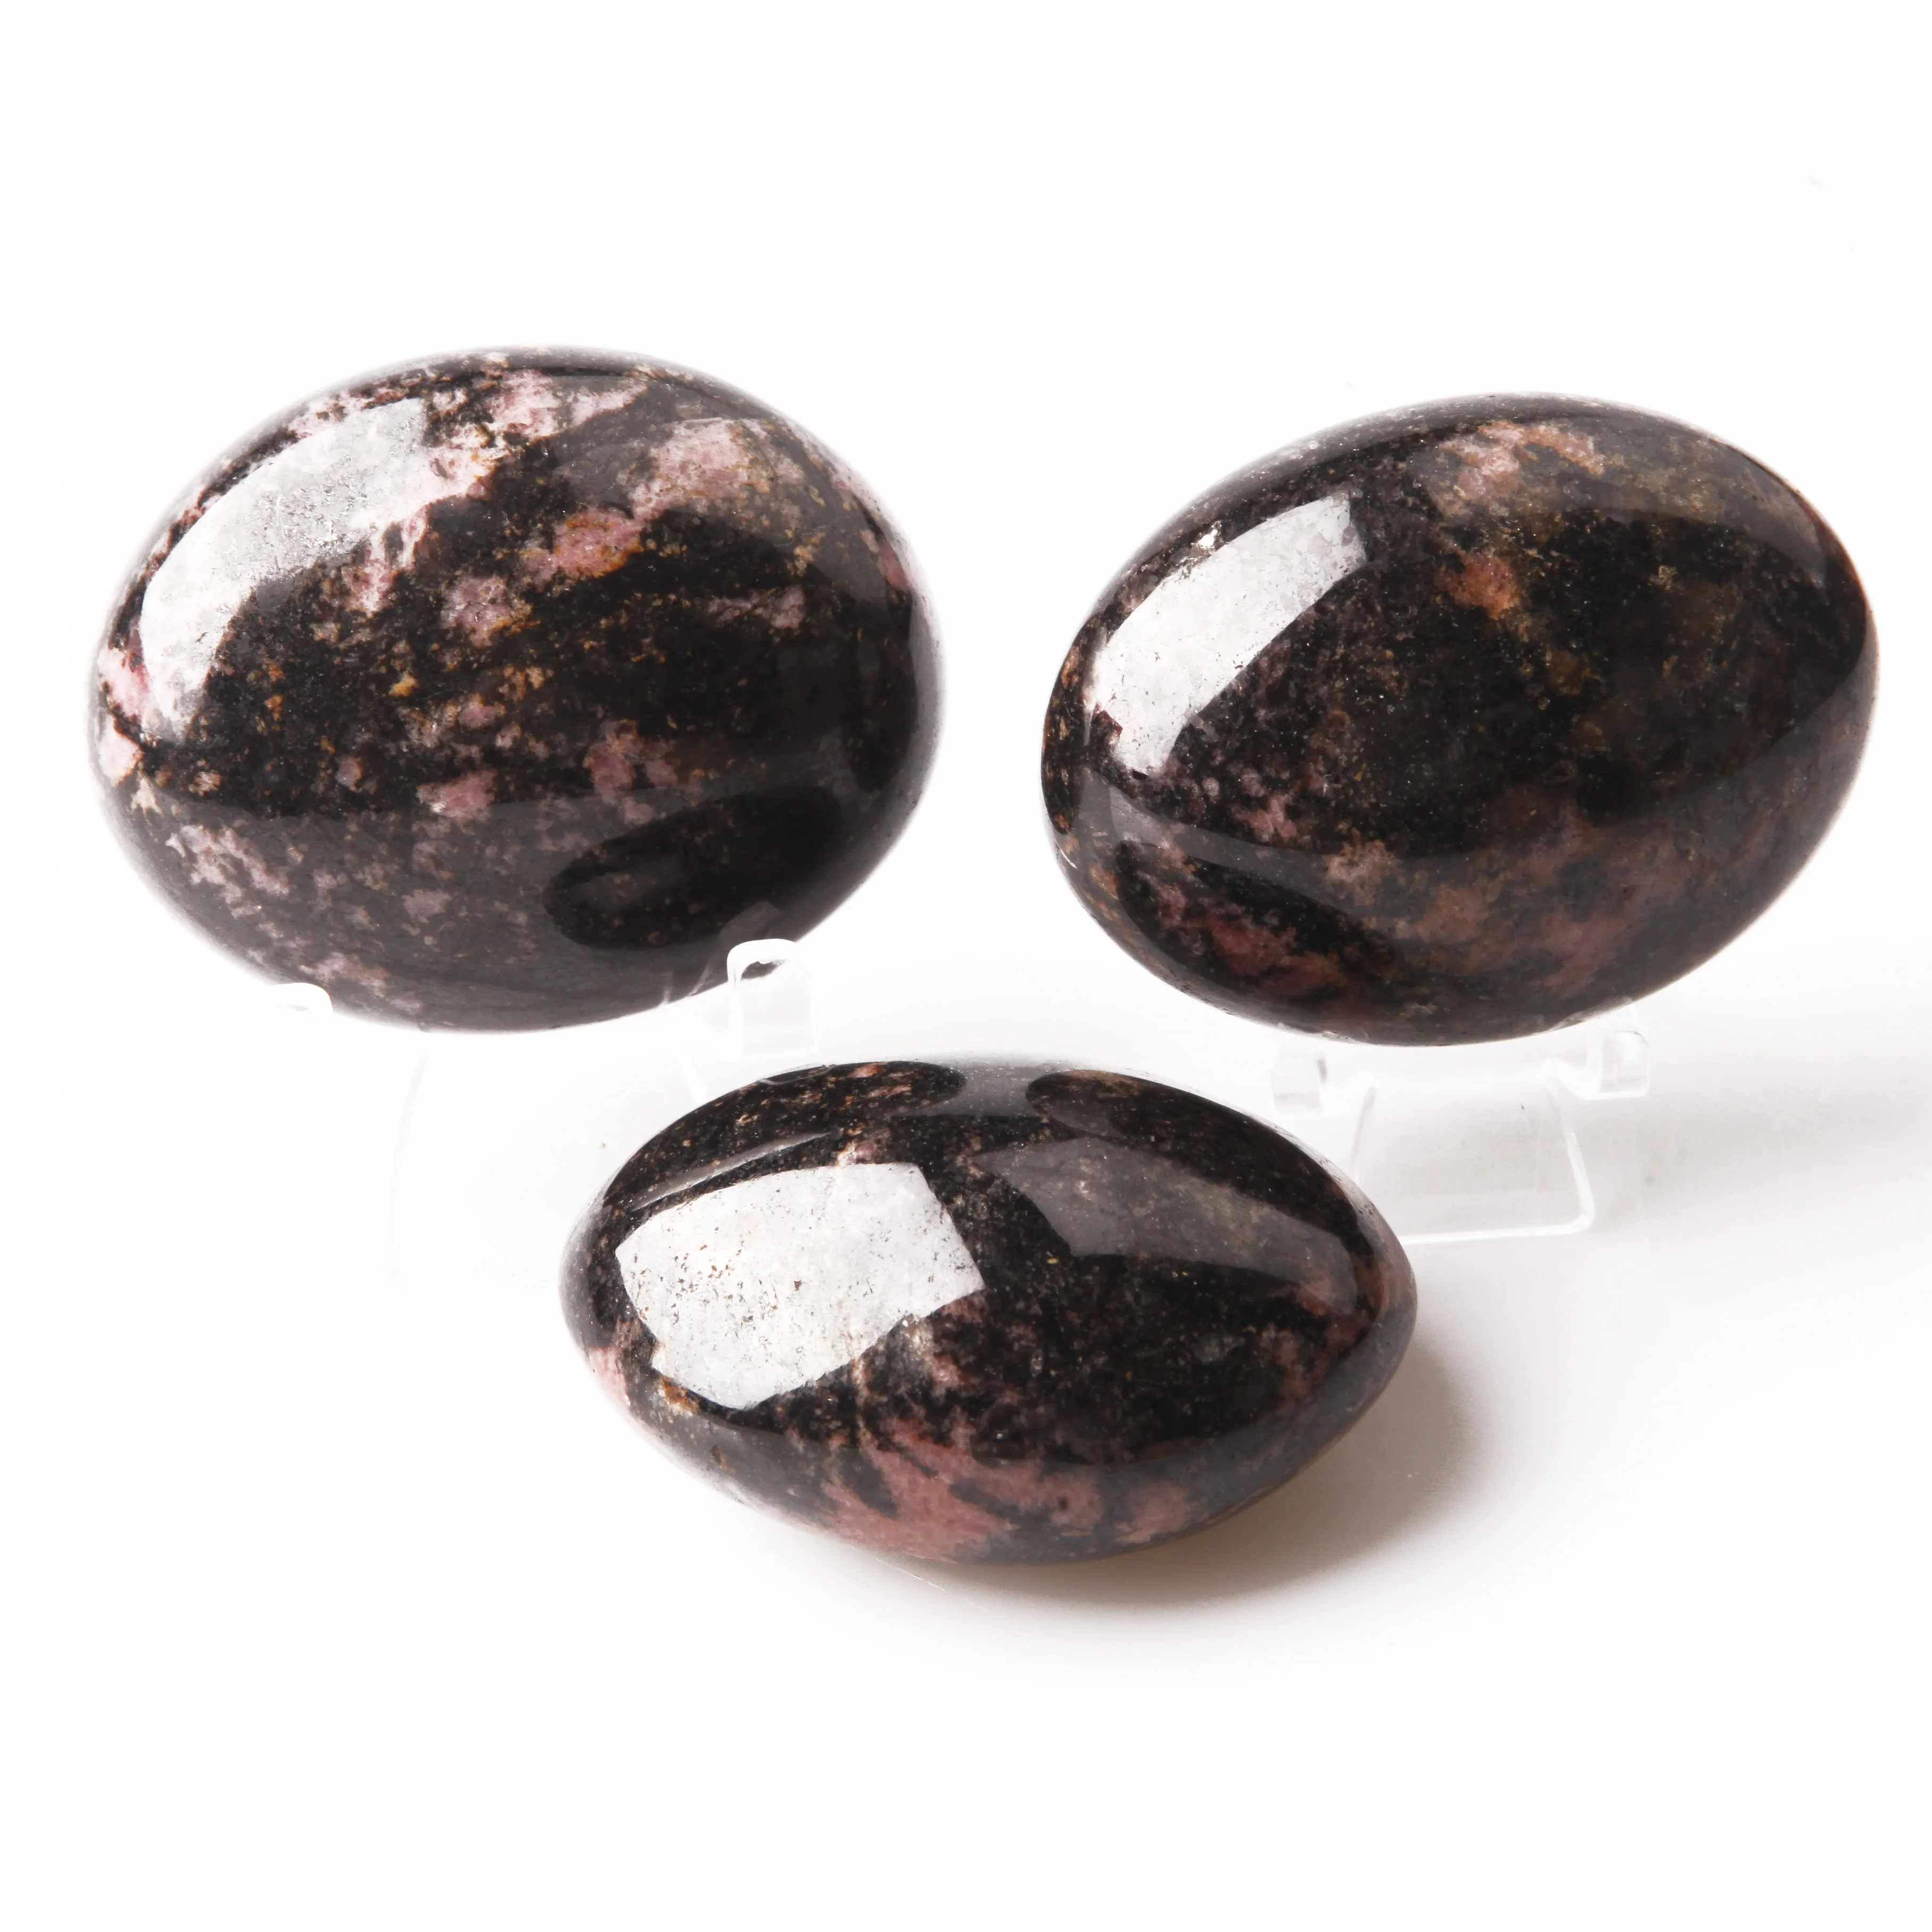 
Высококачественные полированные натуральные грубые оригинальные камни, необработанный драгоценный камень, полудрагоценный родонит  (62279616107)